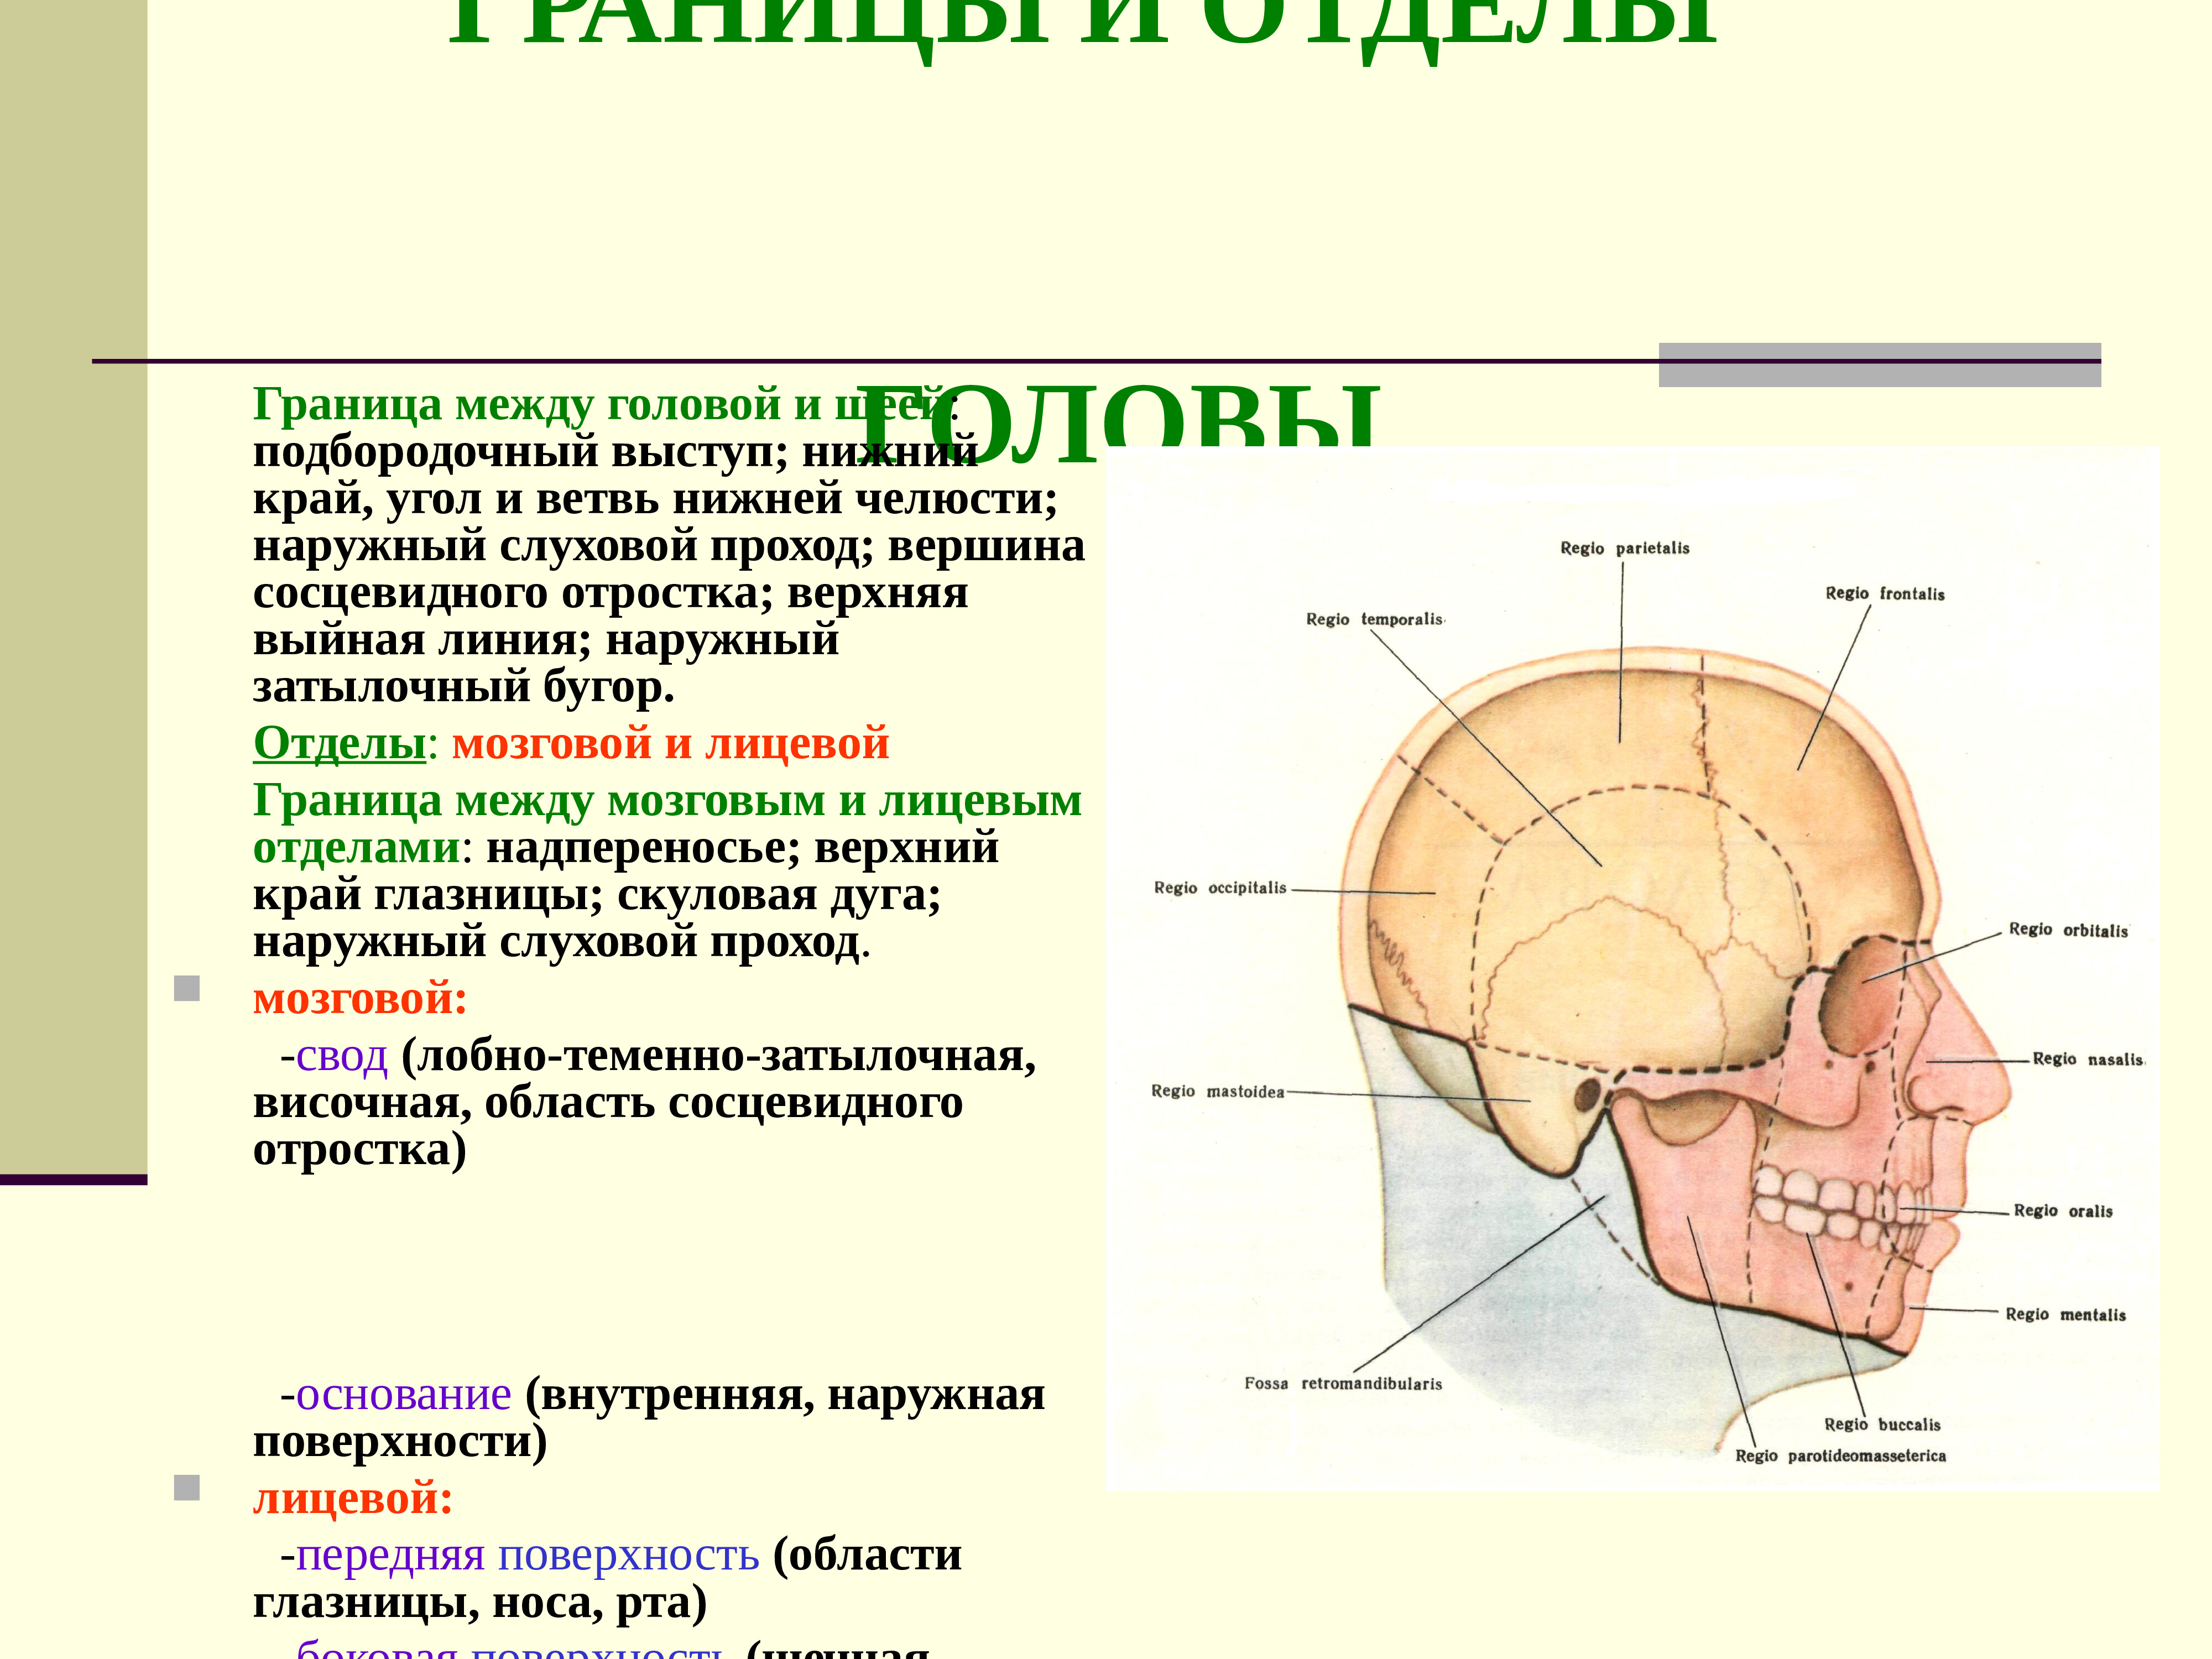 Отдел затылок. Топографическая анатомия боковой области лица: границы, отделы.. Мозговой отдел головы топографическая анатомия. Сосцевидный отросток верхняя выйная линия топографическая анатомия. Граница между мозговым и лицевым отделом черепа.